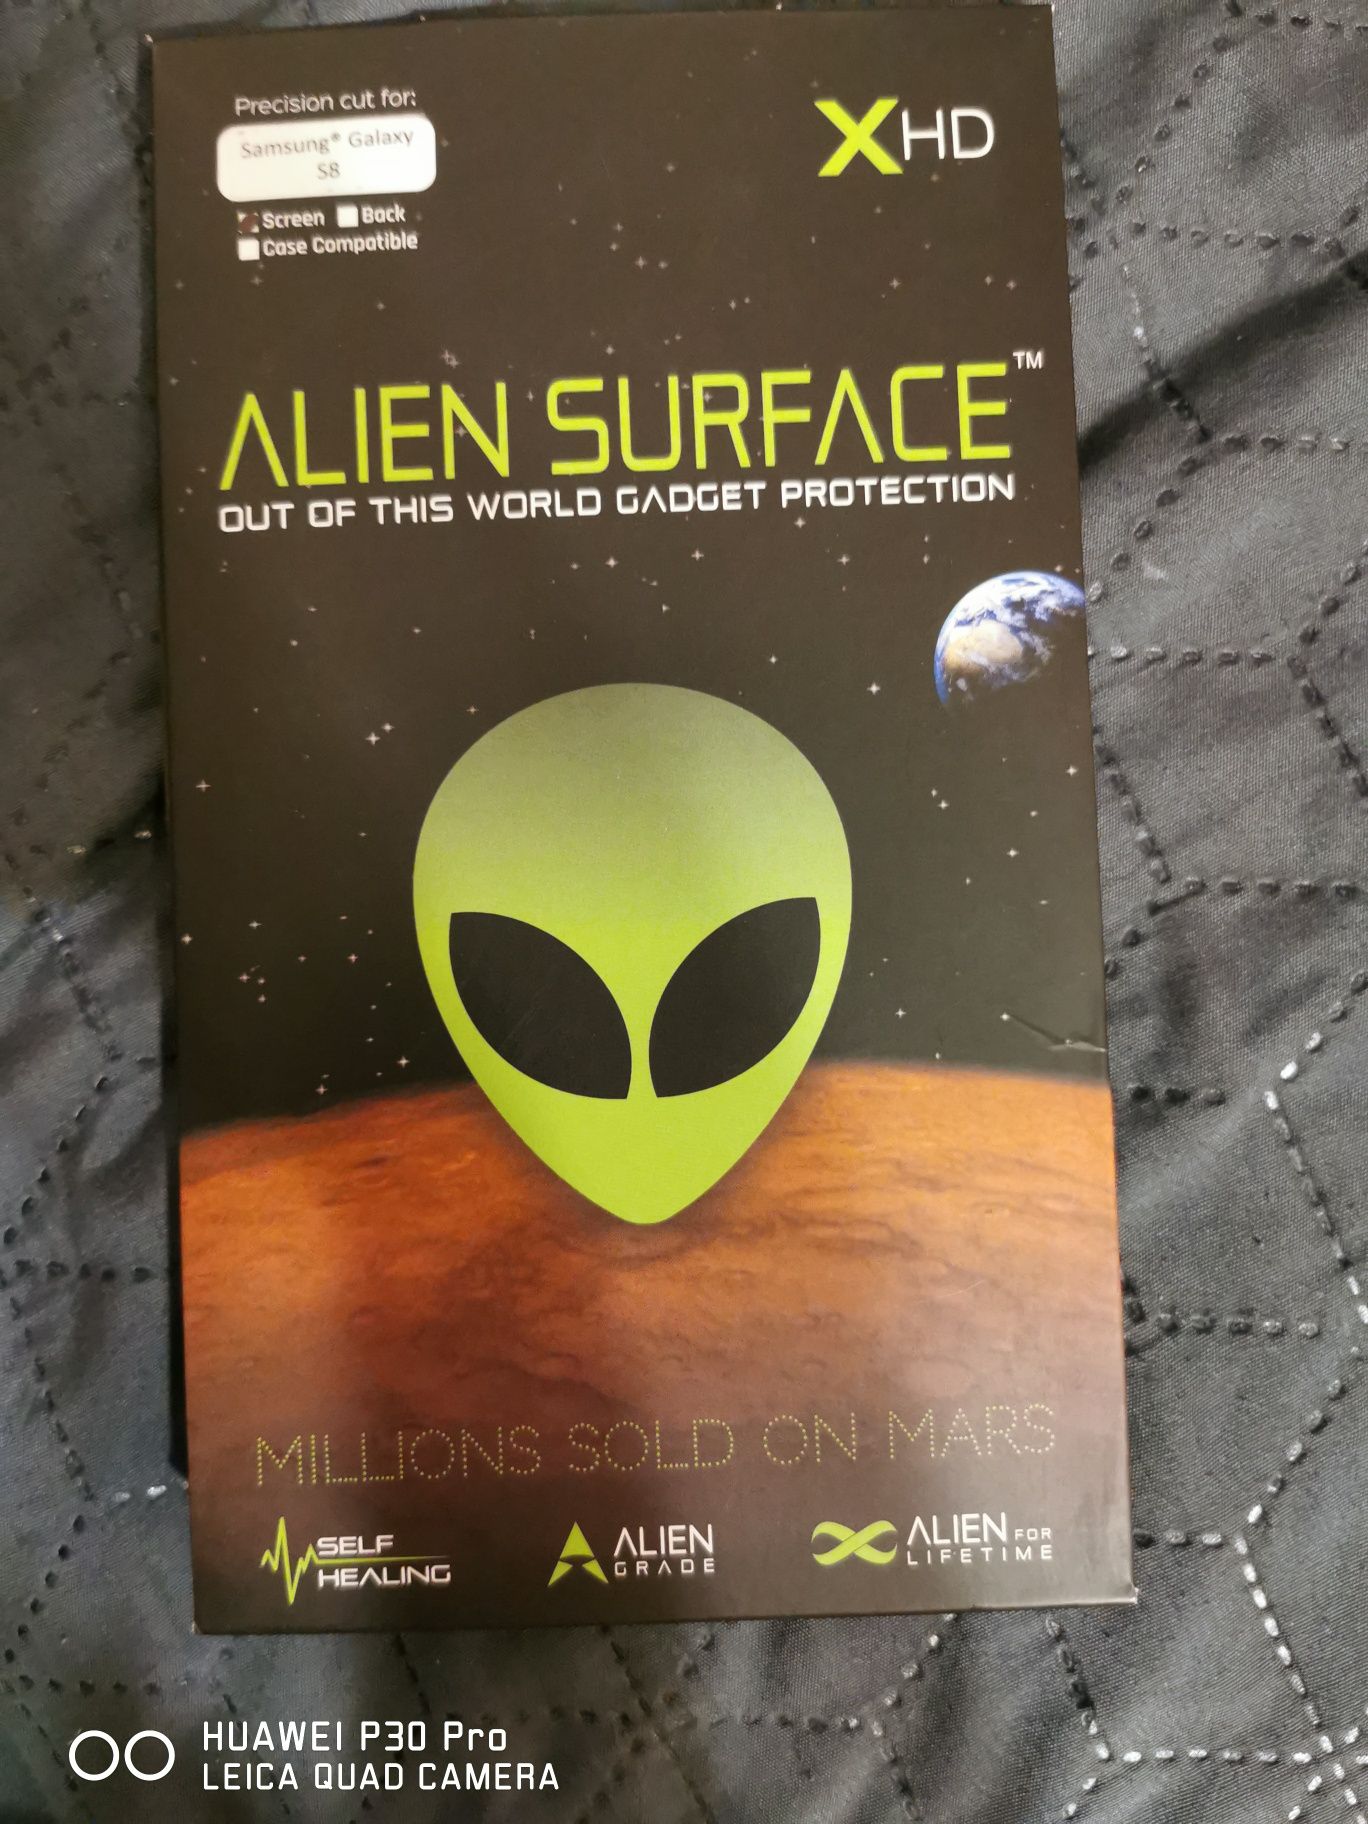 Folie alien surface s8